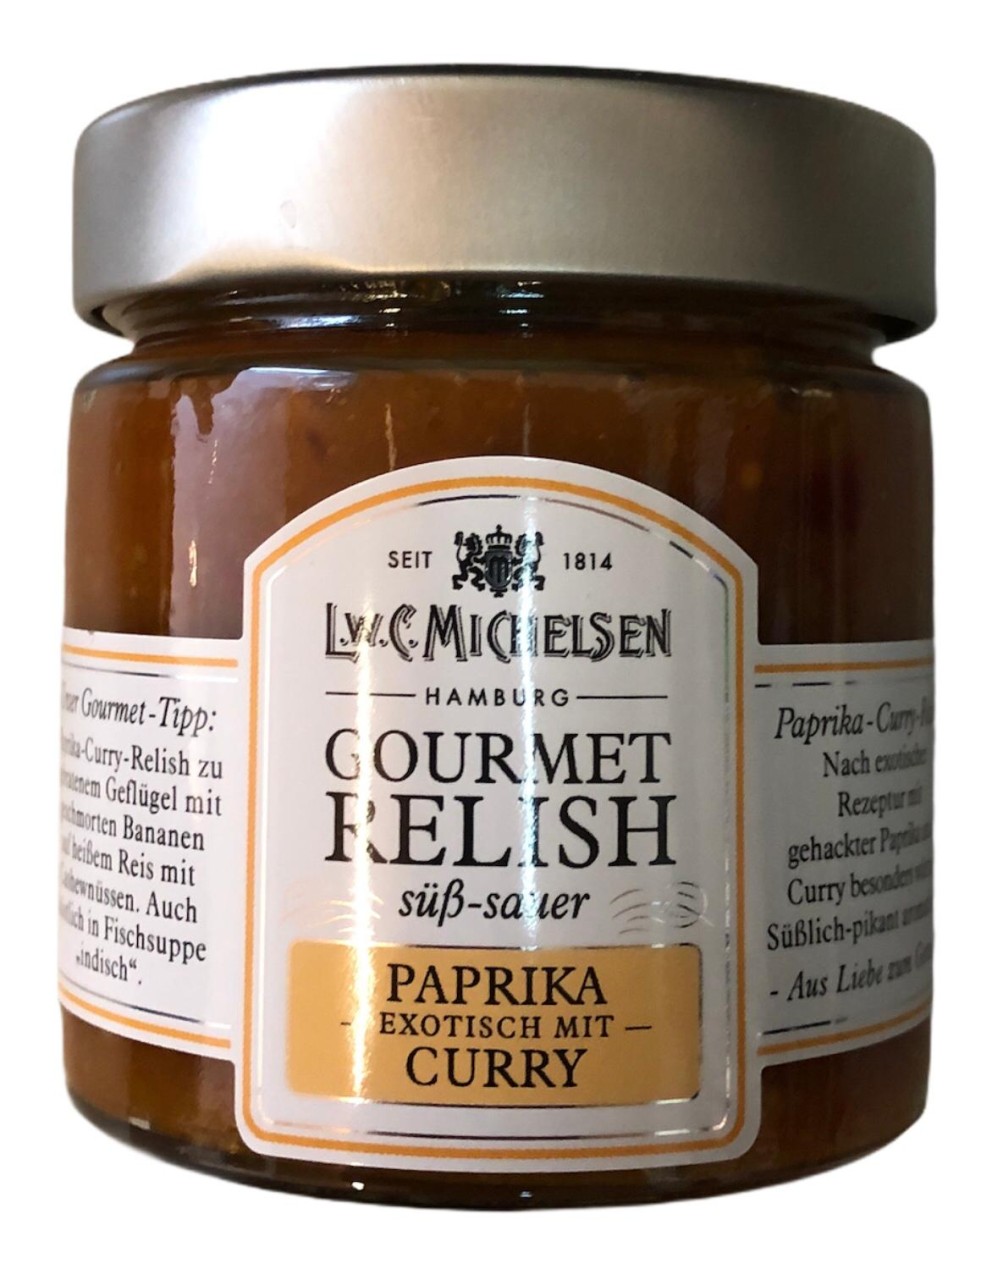 L.W.C. Michelsen Gourmet Relish Paprika Curry -süß sauer- 215g